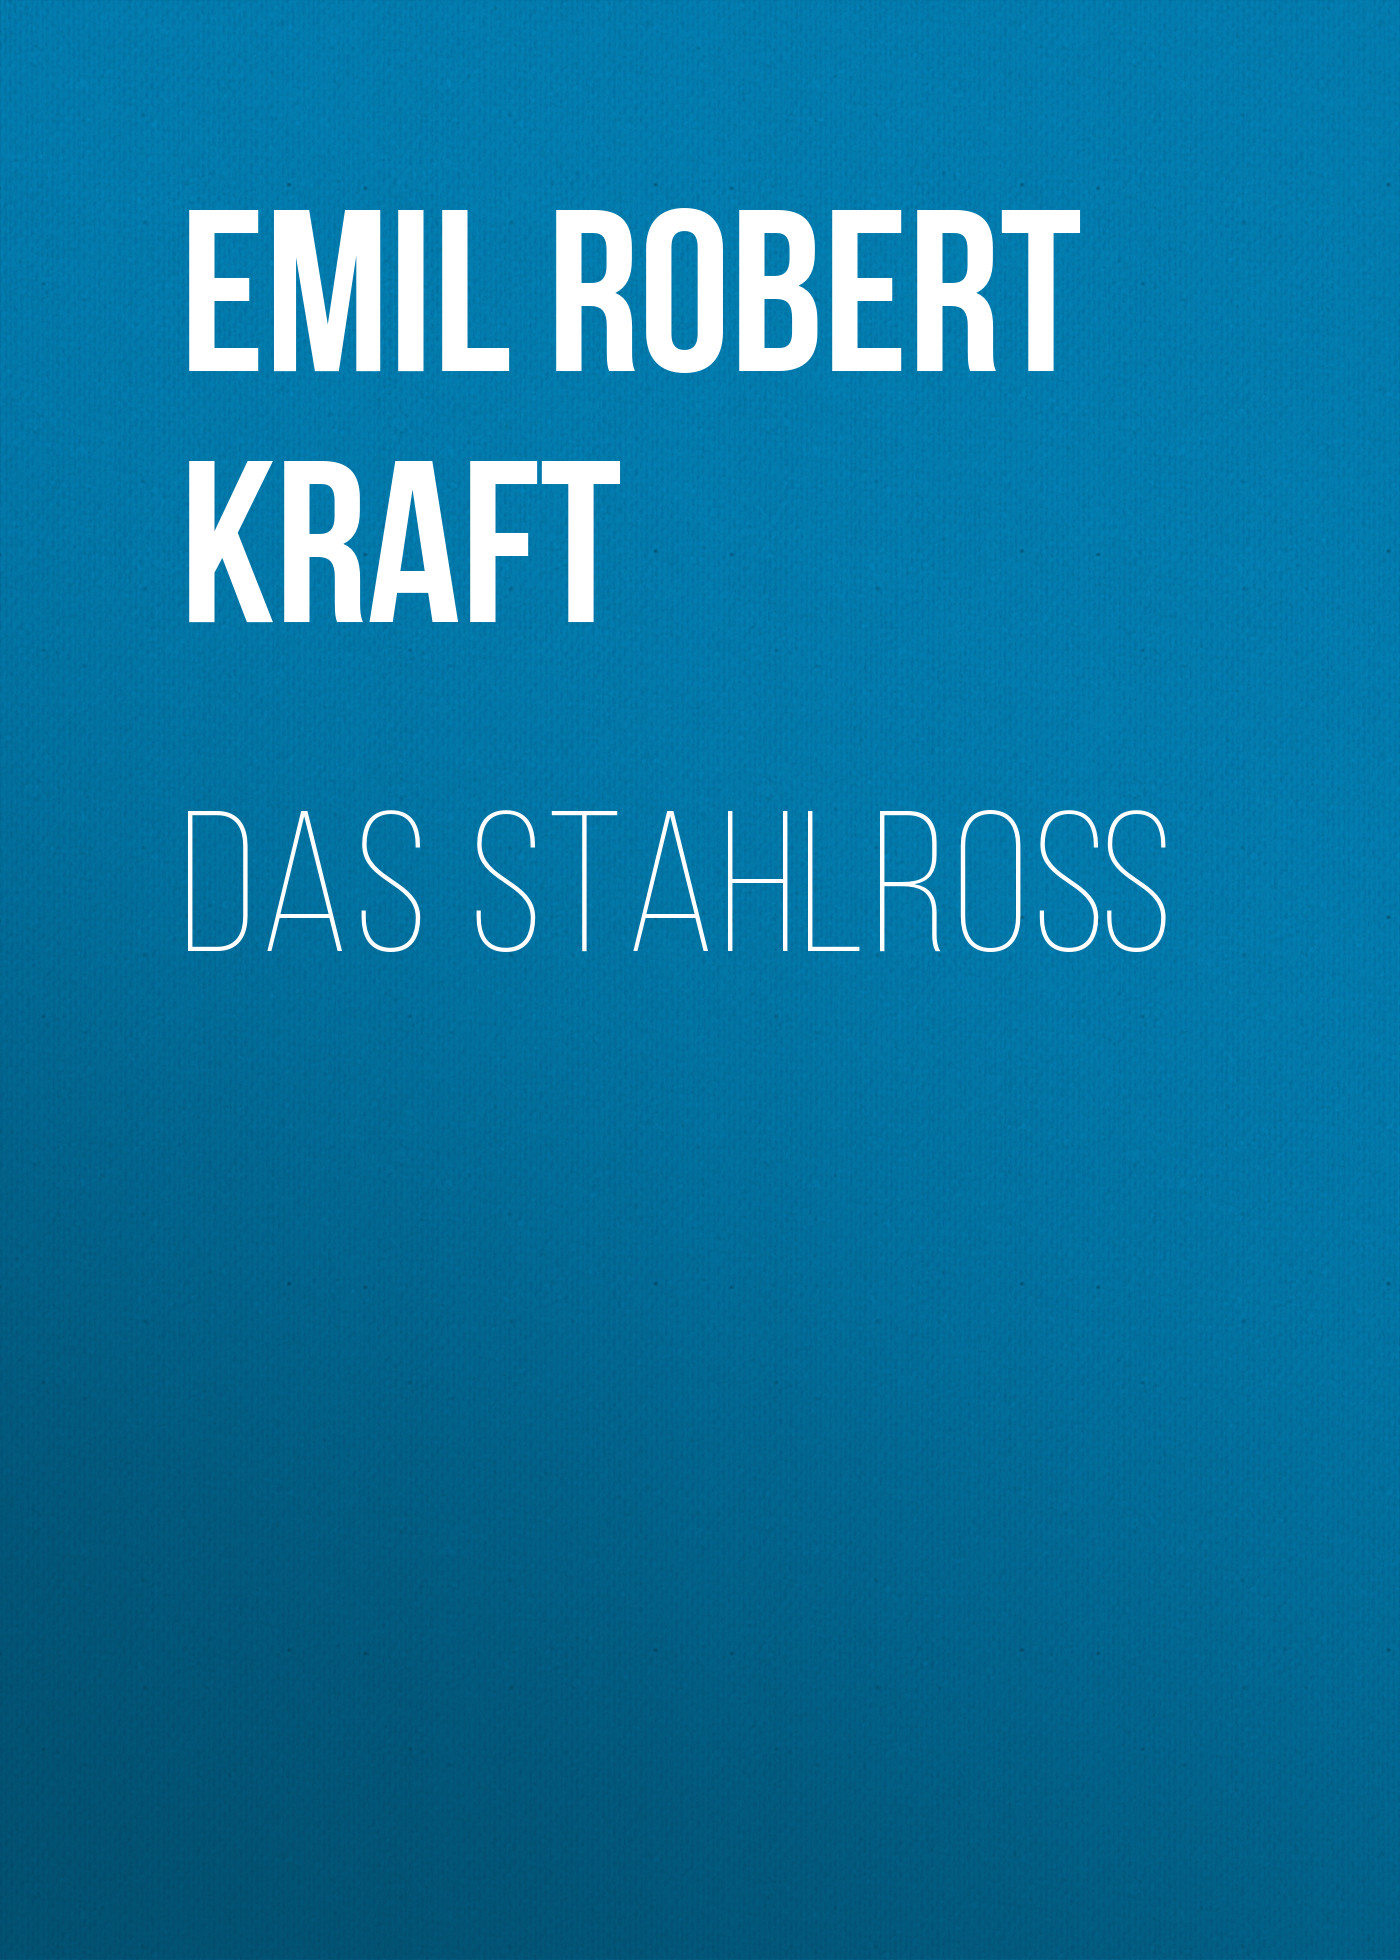 Книга Das Stahlroß из серии , созданная Emil Robert Kraft, может относится к жанру Зарубежная классика. Стоимость электронной книги Das Stahlroß с идентификатором 48633132 составляет 0 руб.